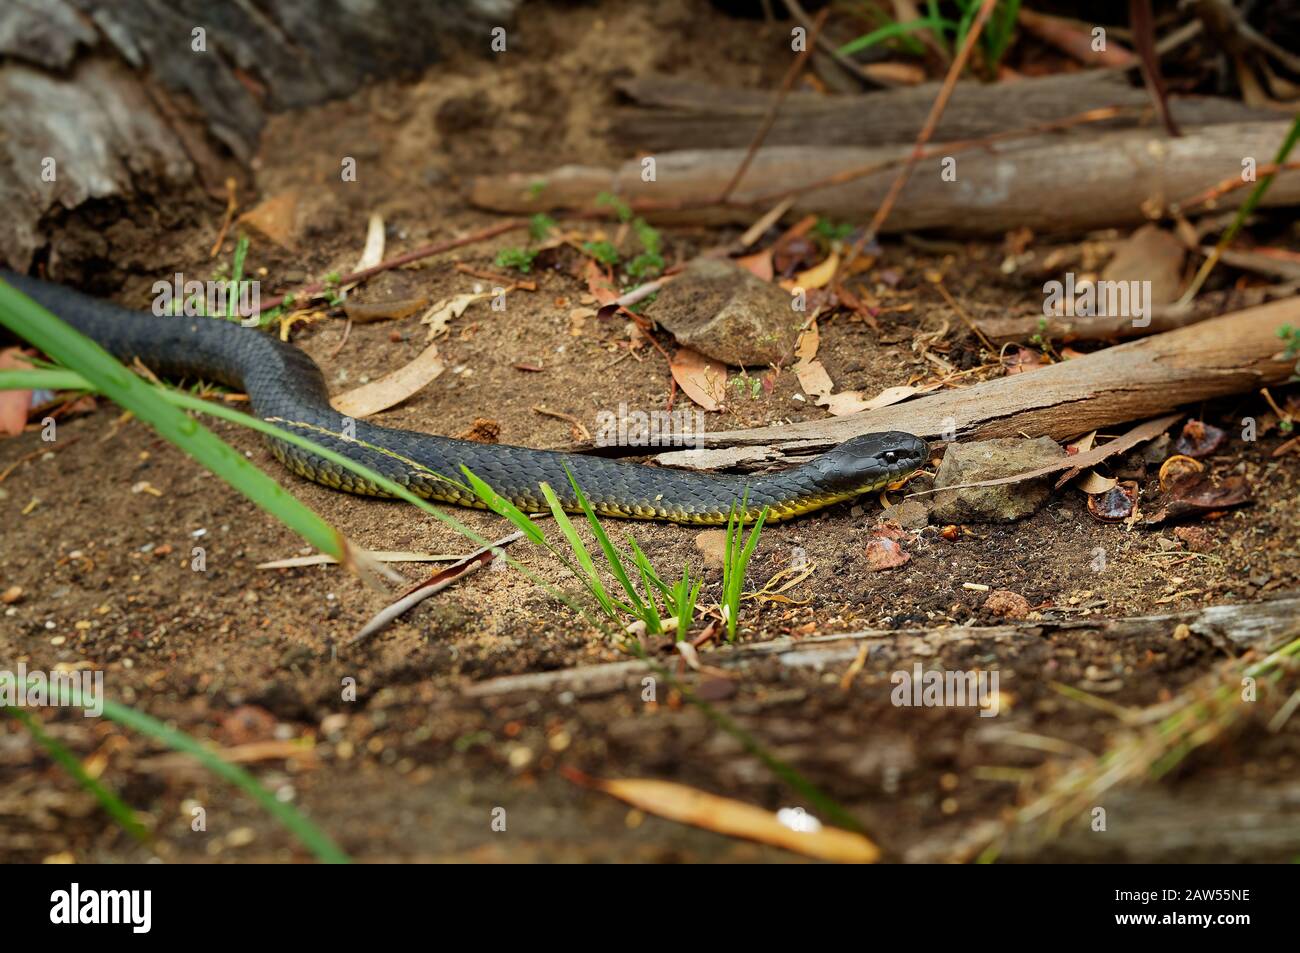 Serpiente marrón oriental - Pseudonaja textilis también la serpiente marrón común, es una serpiente muy venenosa de la familia Elapidae, nativa del este y del centro Foto de stock